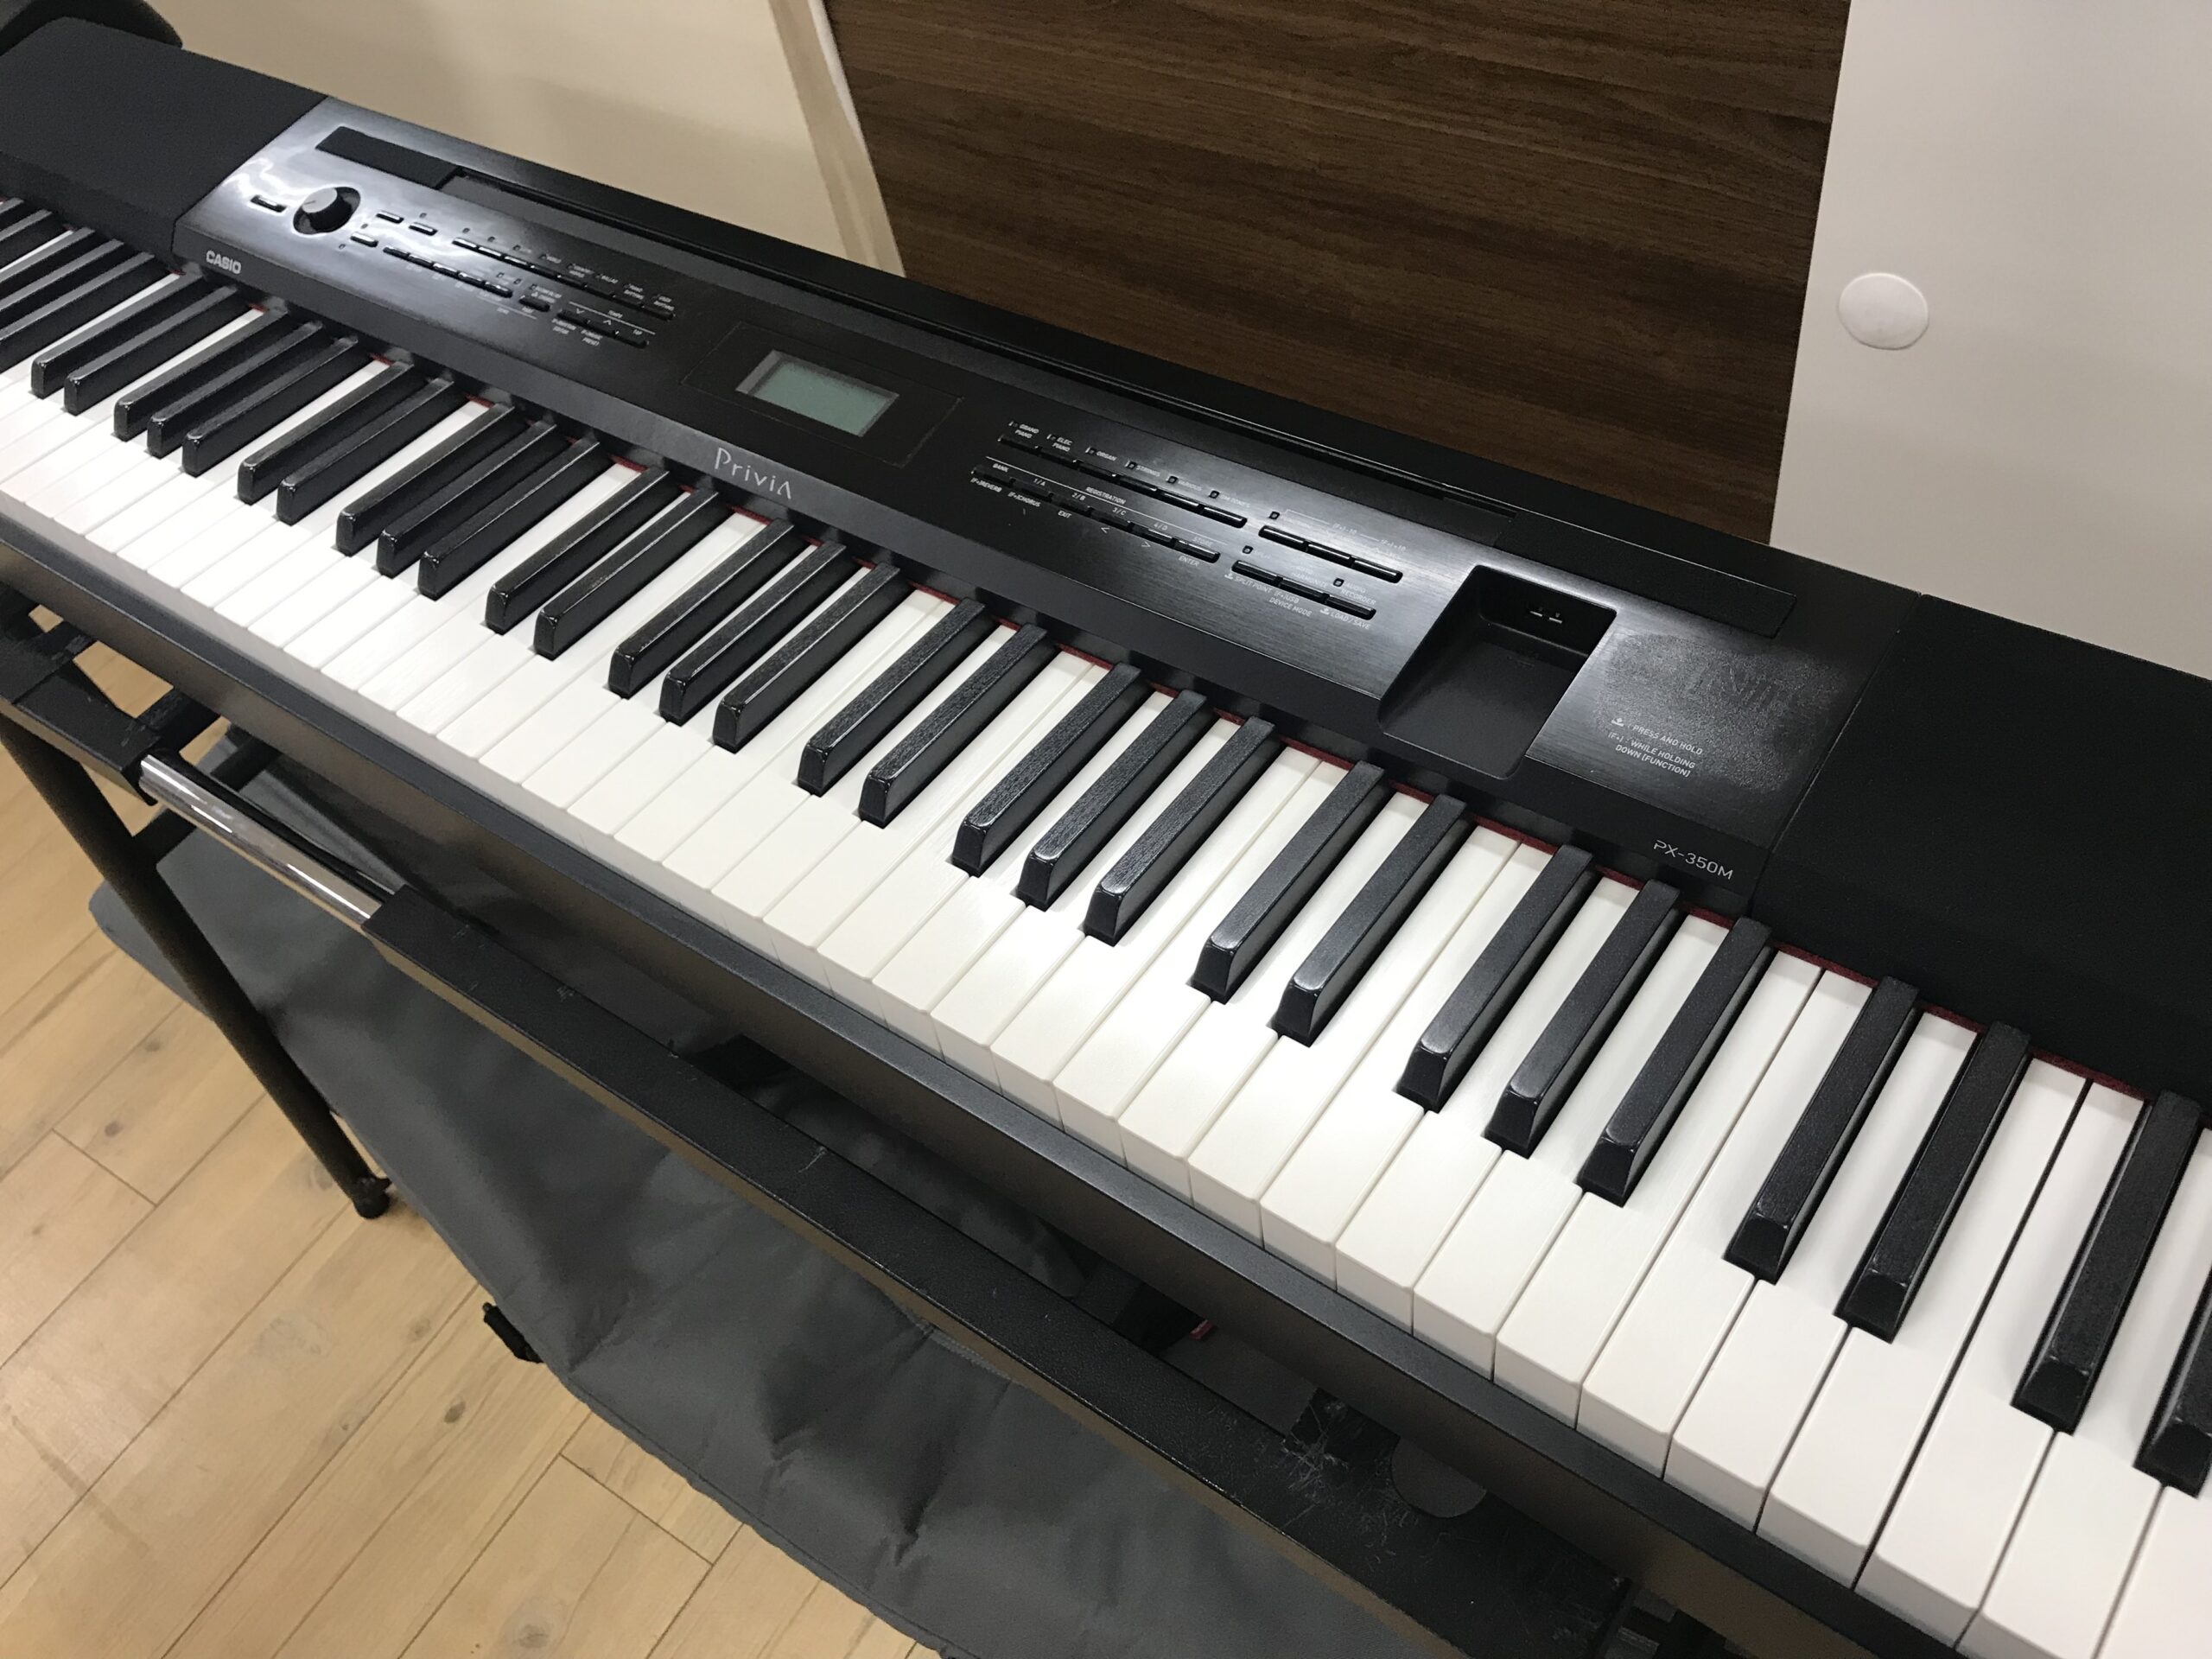 ◉即購入ok! ガイド機能付き 電子ピアノ - 鍵盤楽器